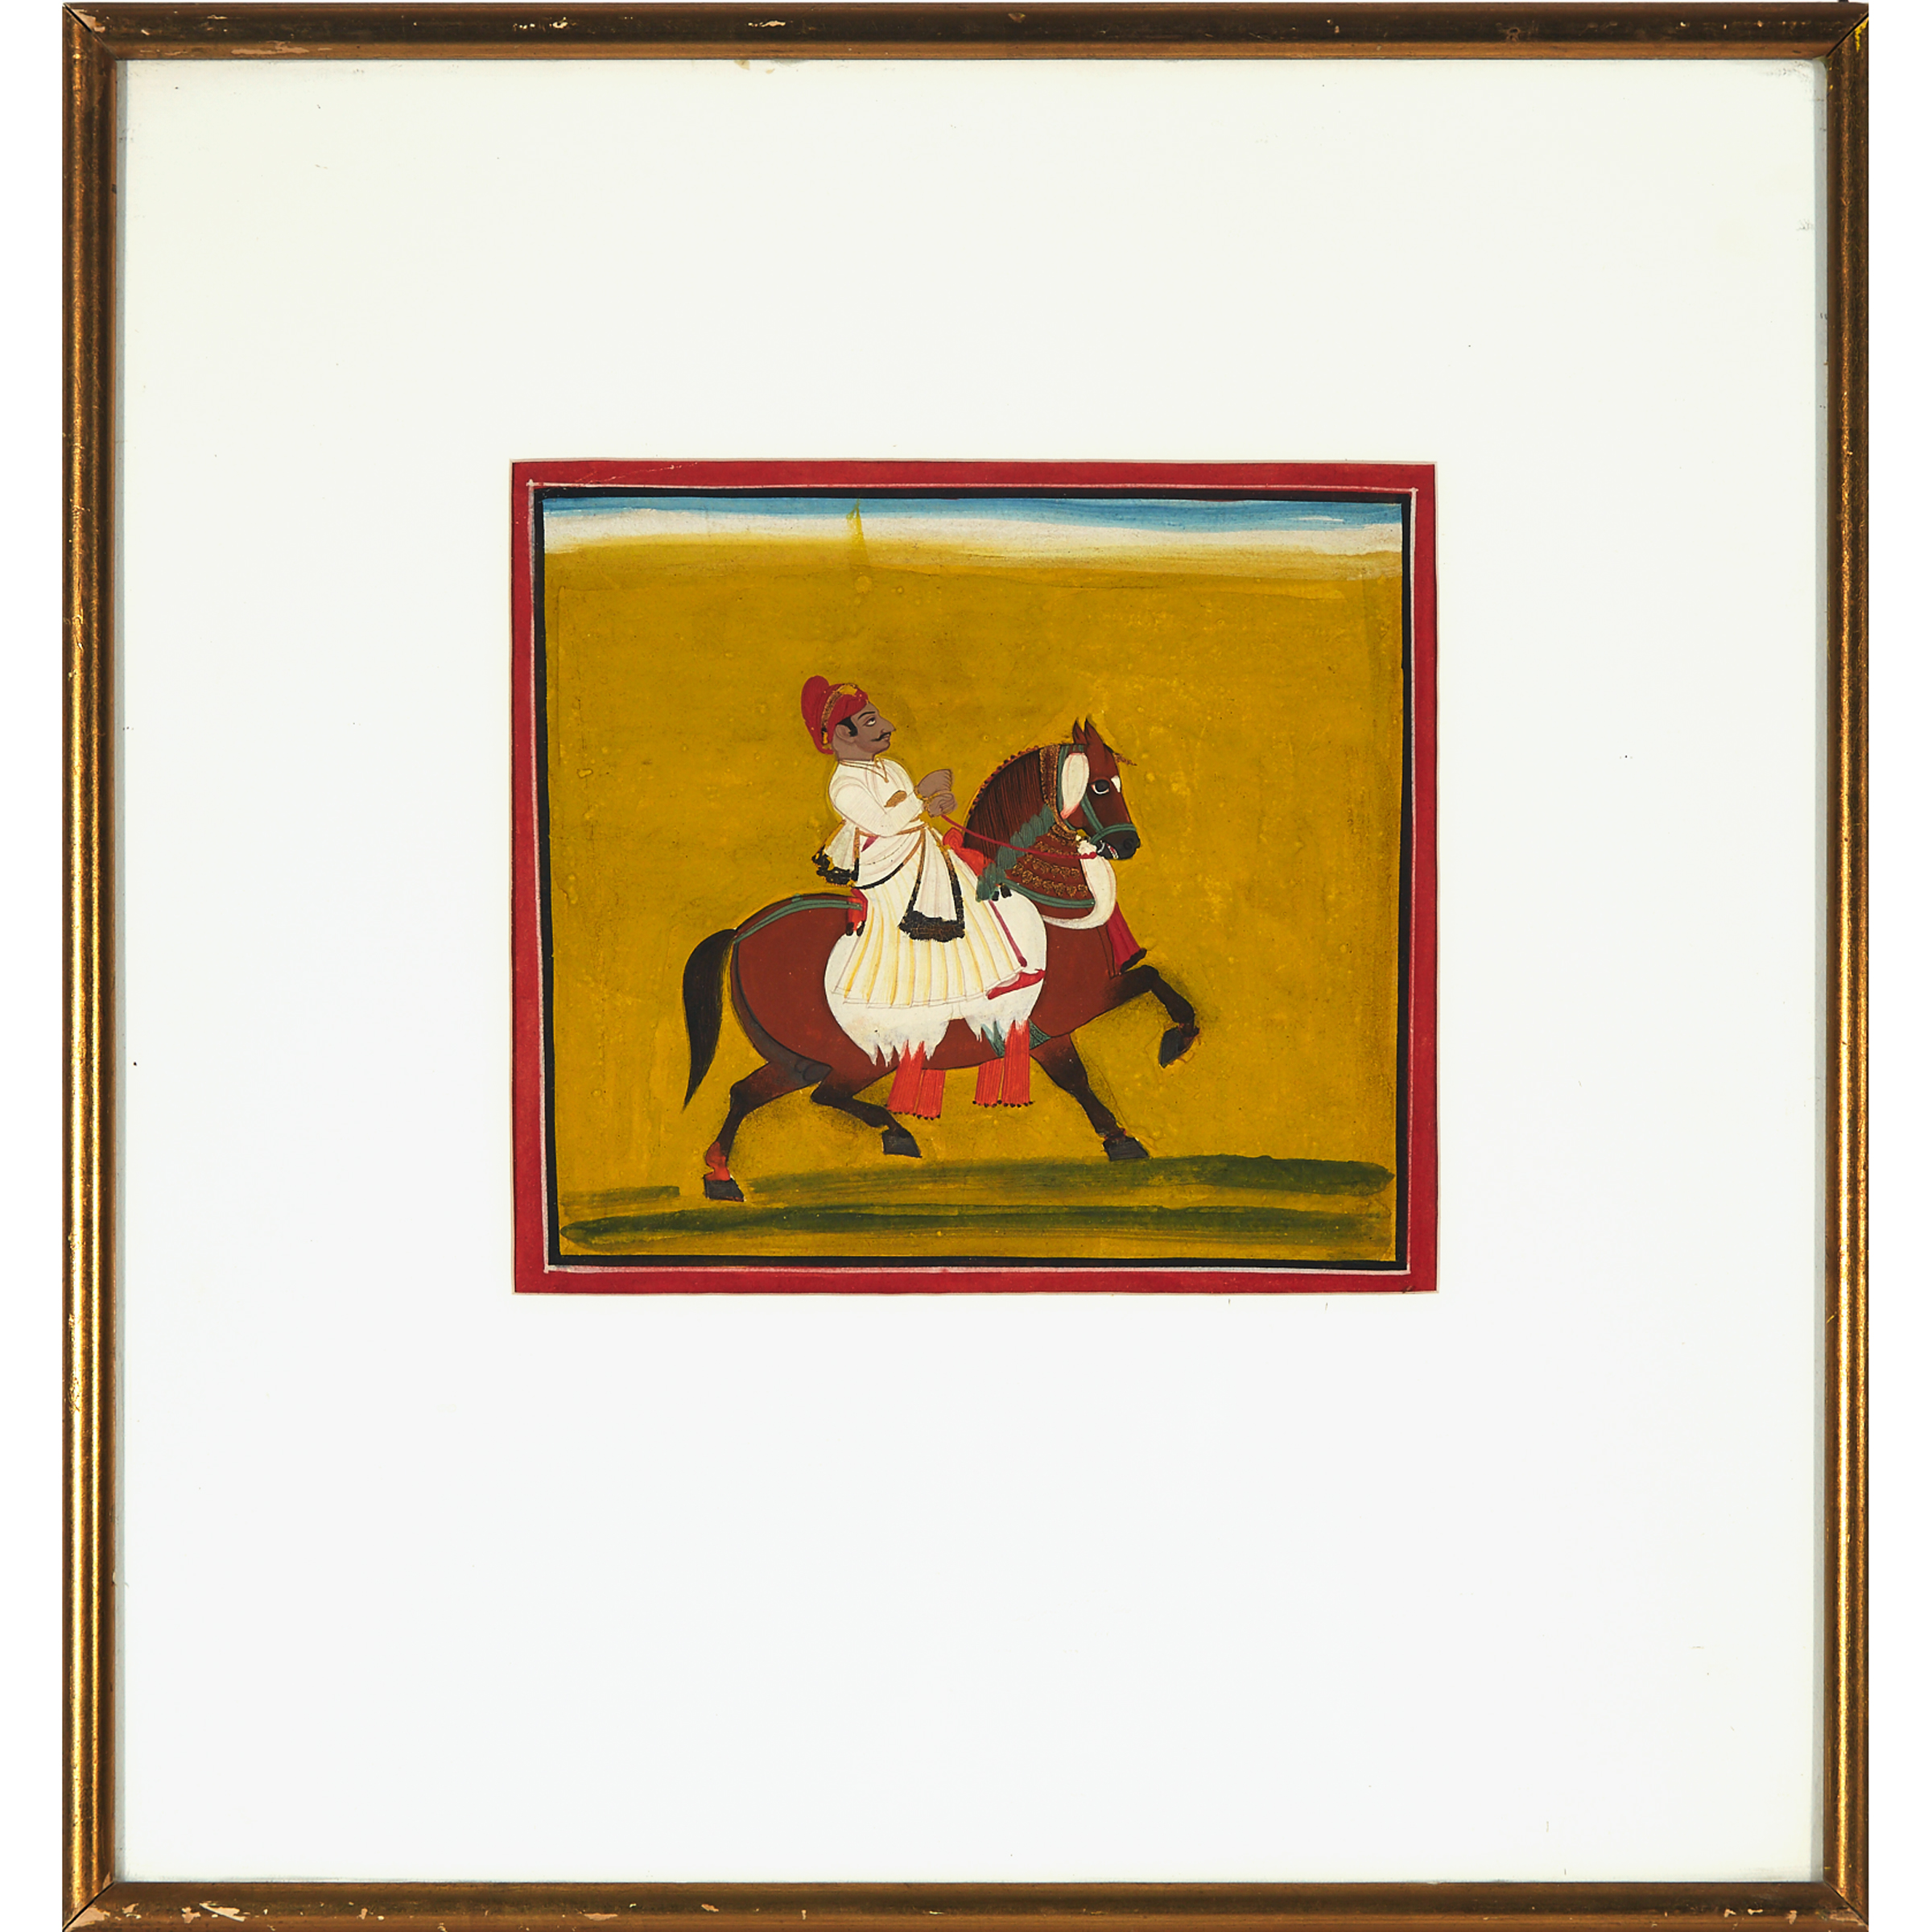 Rajasthan School, Equestrian Portrait, 19th Century